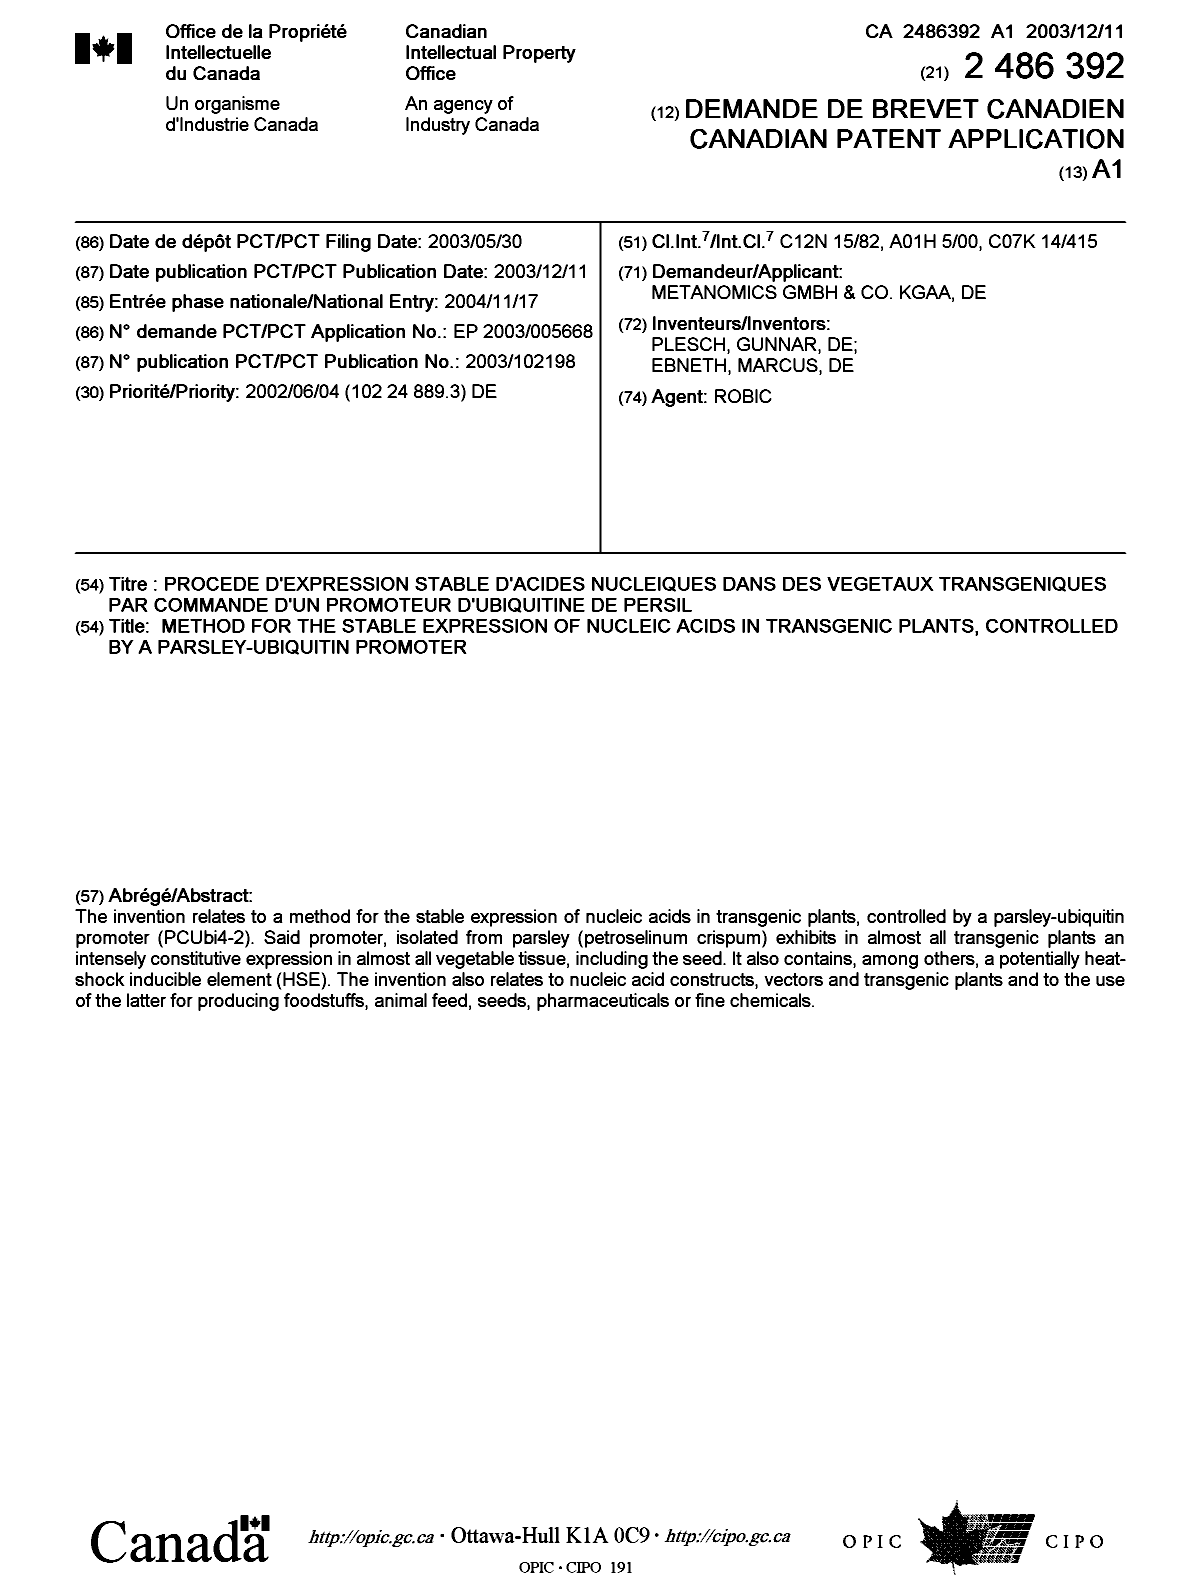 Document de brevet canadien 2486392. Page couverture 20050210. Image 1 de 1